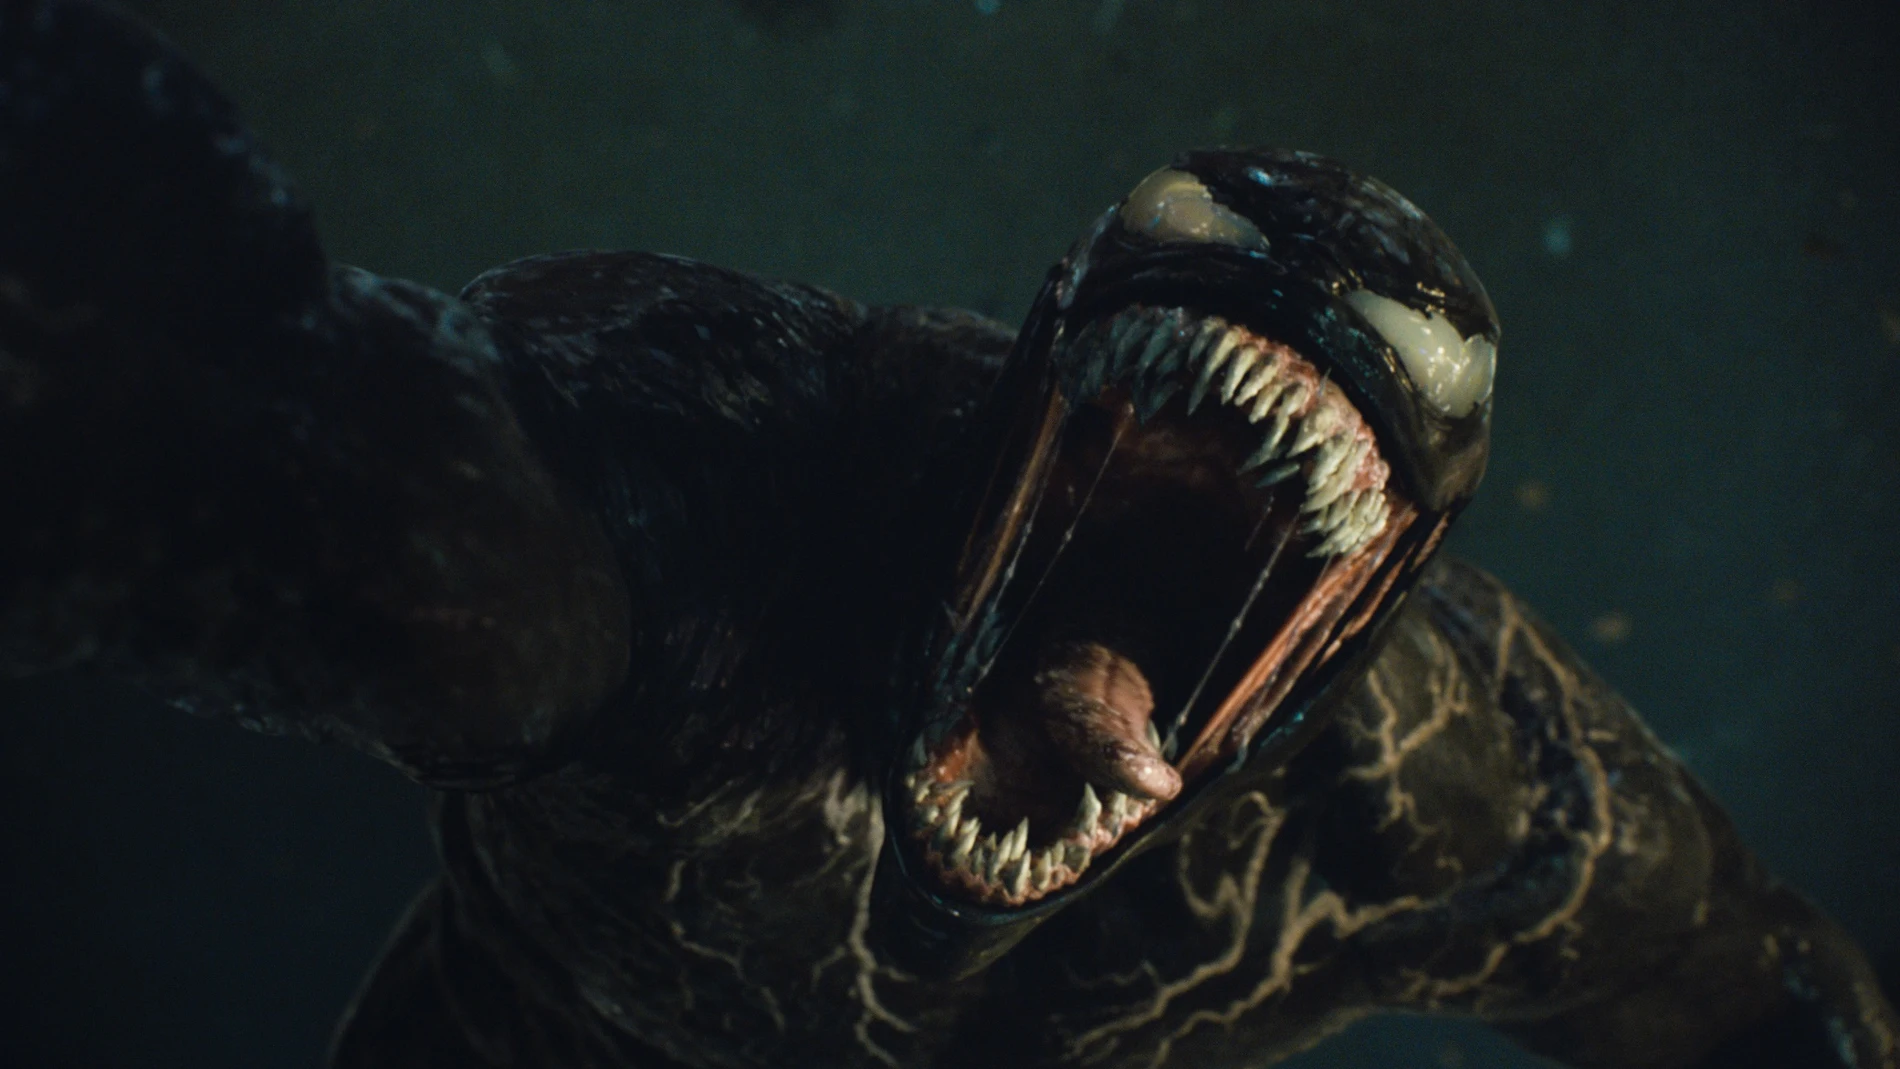 "Venom: habrá matanza" se estrena en España el 15 de octubre y está protagonizada por Tom Hardy y Woody Harrelson